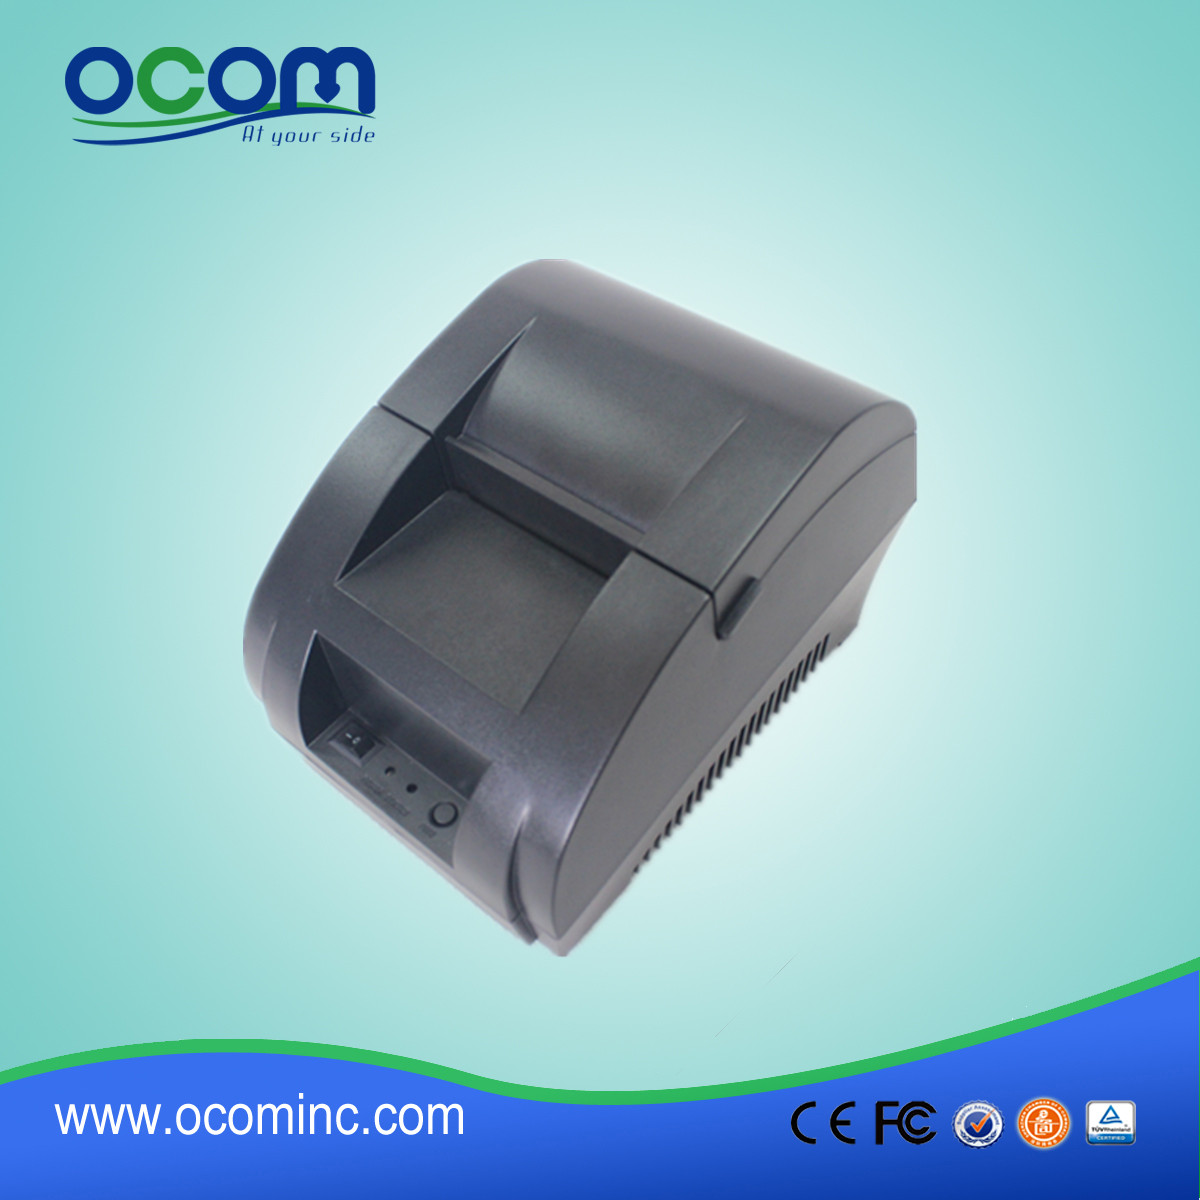 Impressora de recibos térmicos de 58mm com adaptador de alimentação incorporado OCPP-58Z-U1 impressão de código 1D / 2D